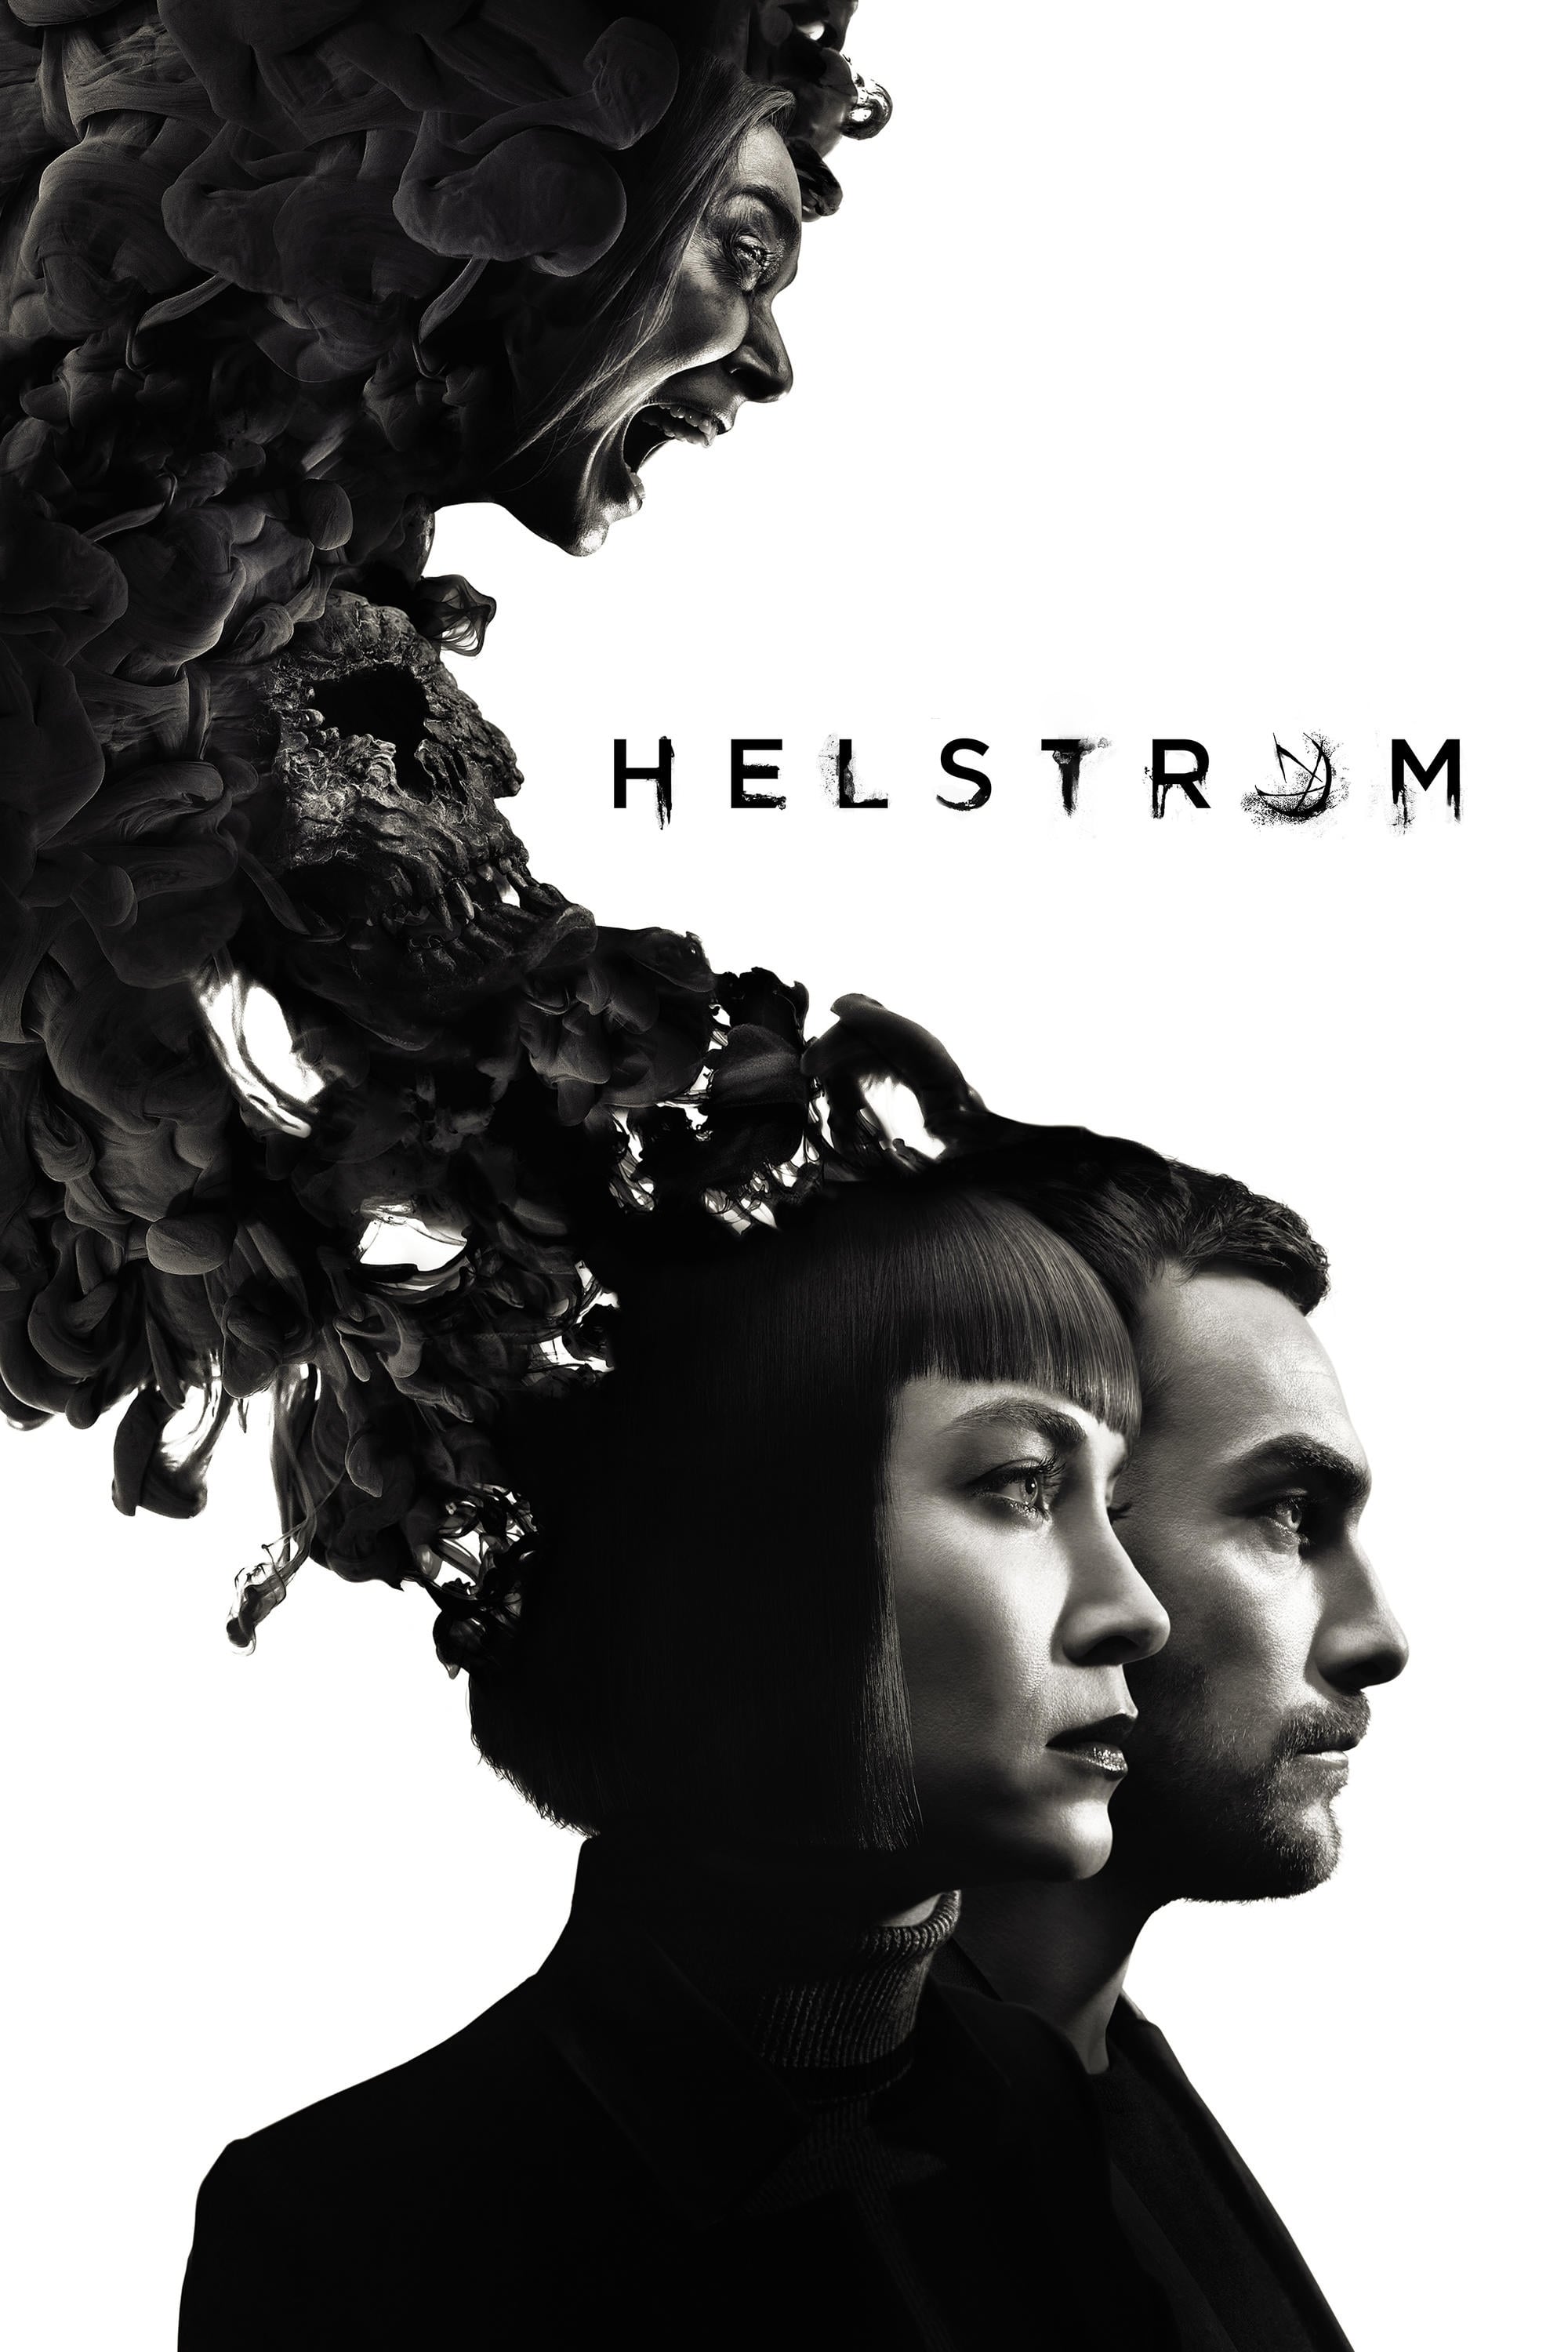 Marvel's Helstrom poster